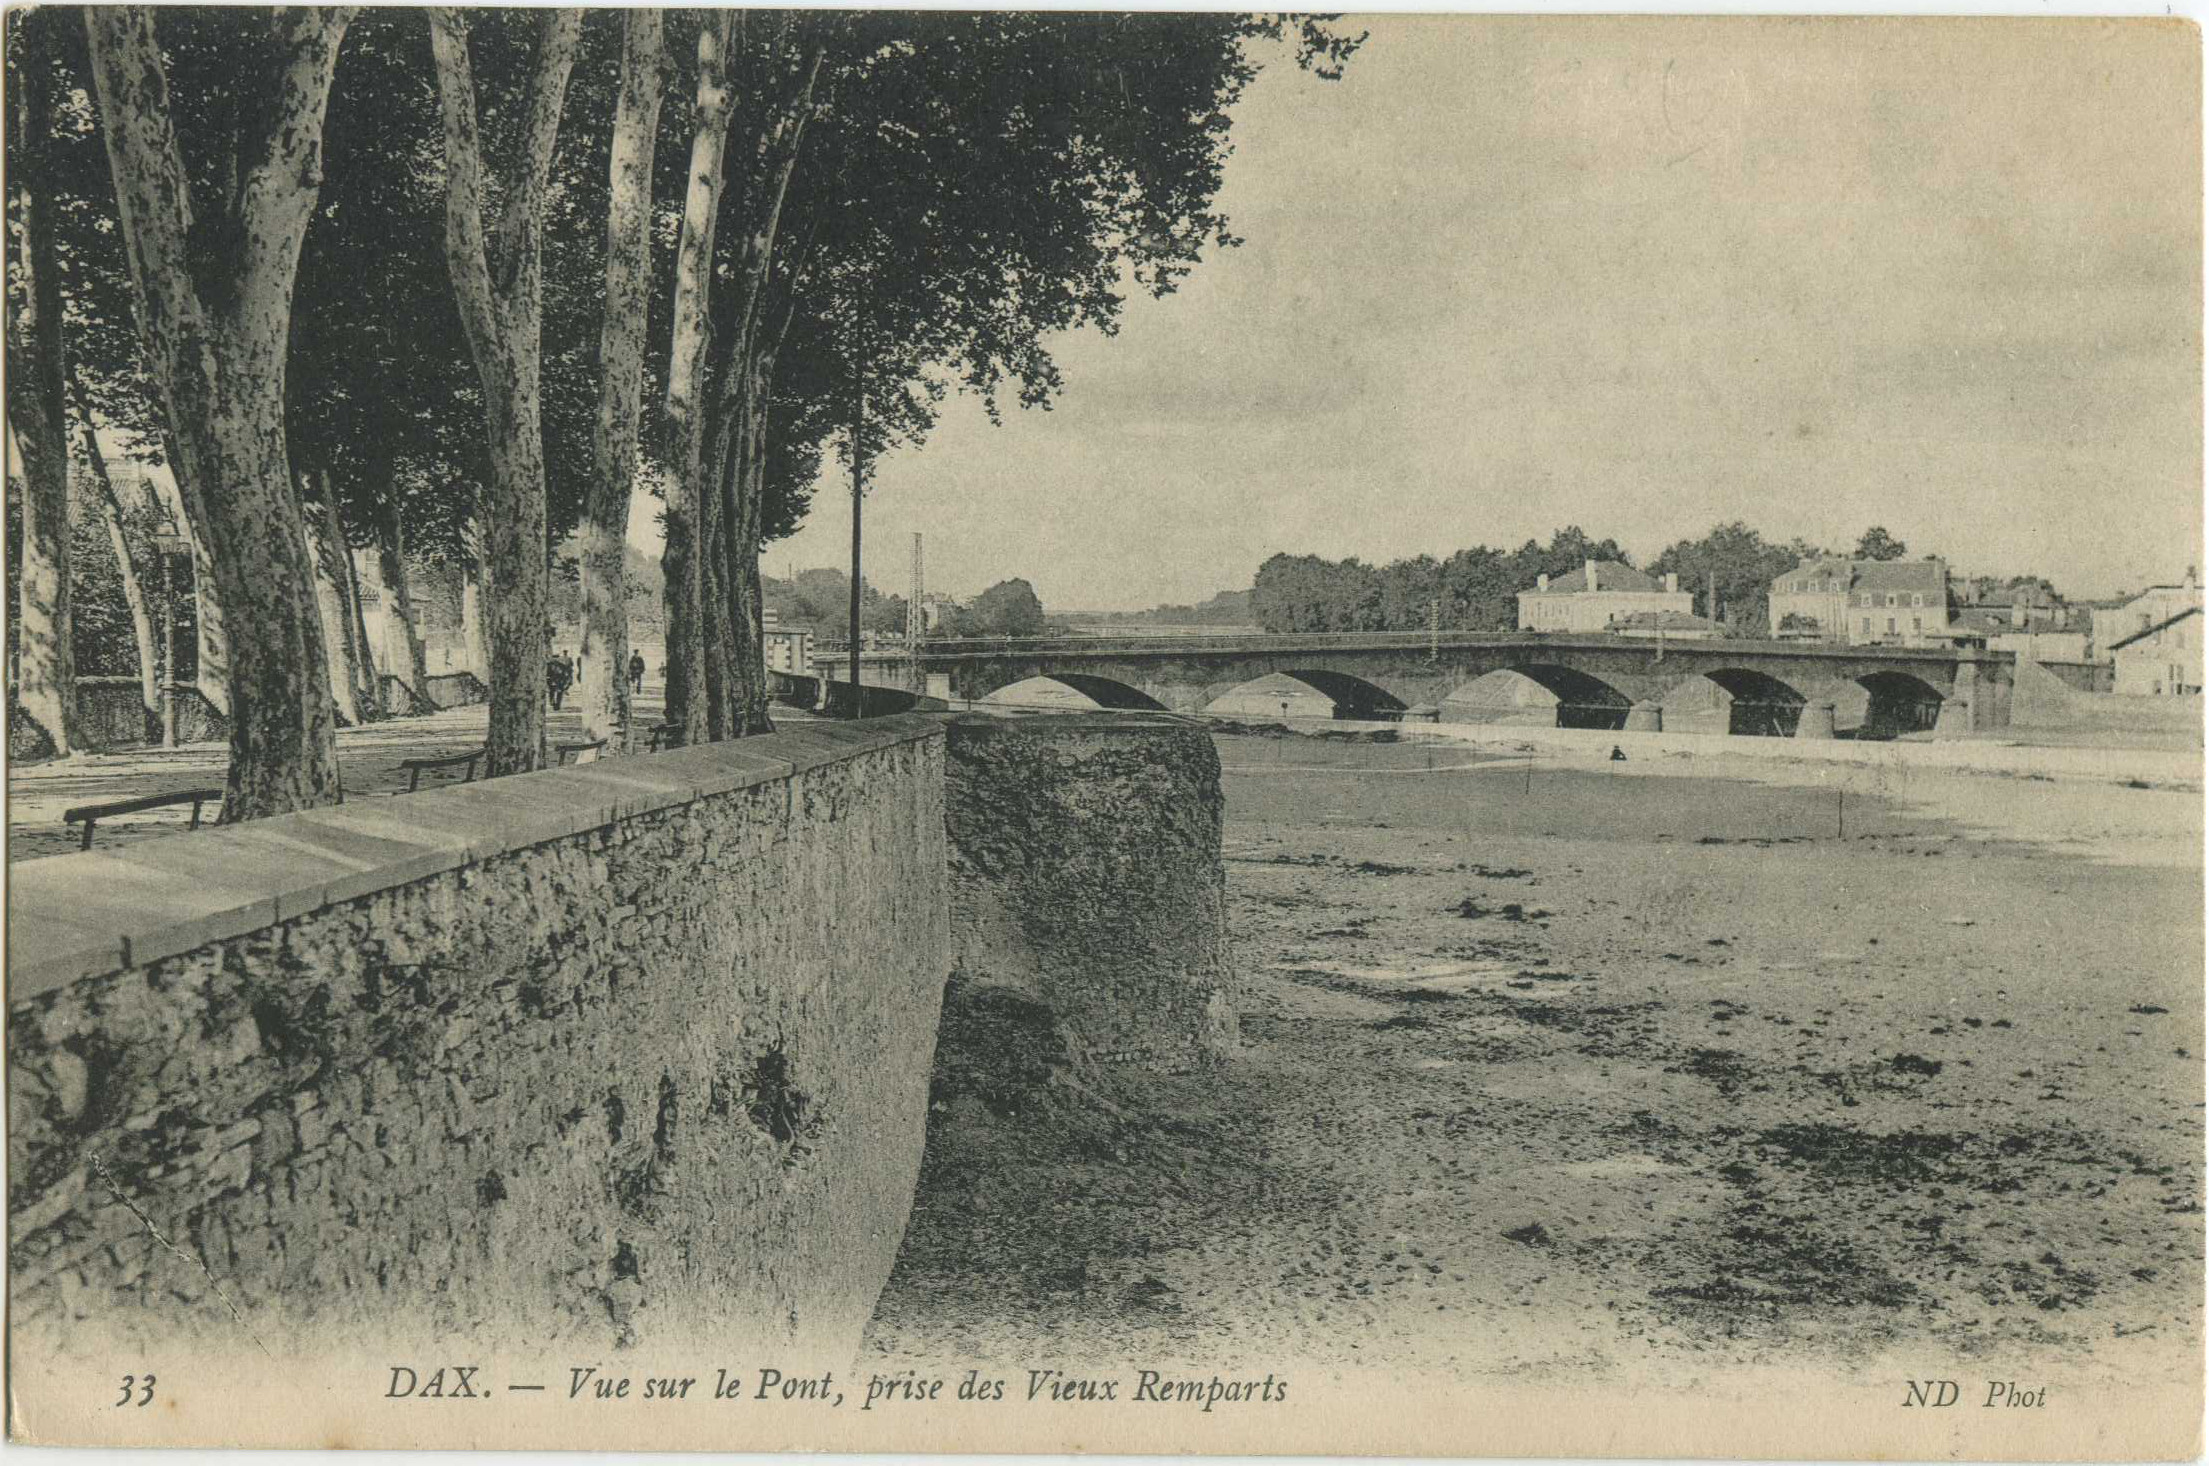 Dax - Vue sur le Pont, prise des Vieux Remparts